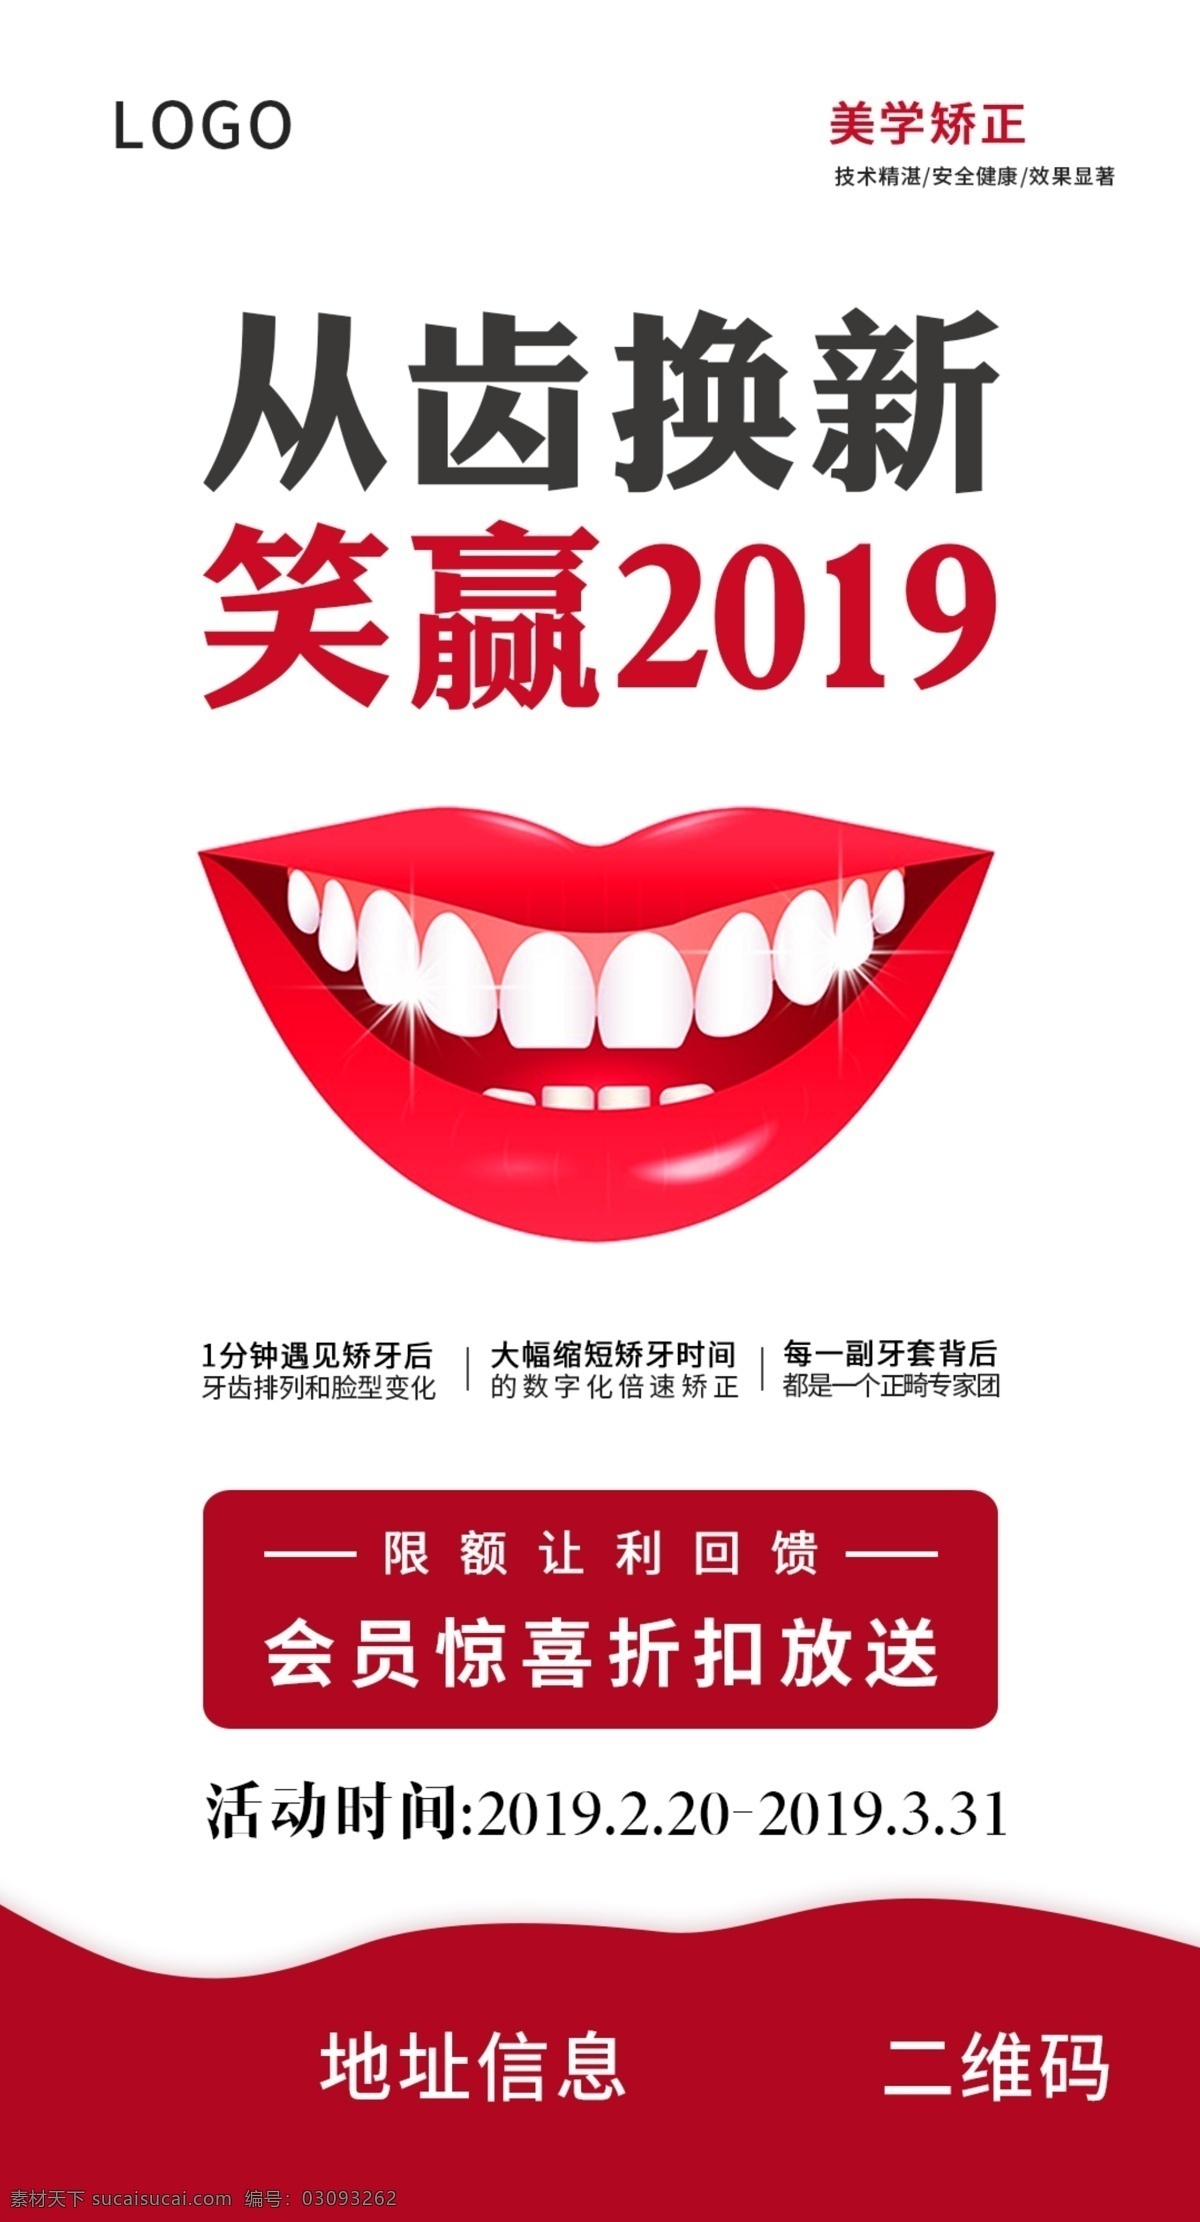 红色牙科广告 牙齿 笑容 2019 换新 红色 口腔 会员 矫正